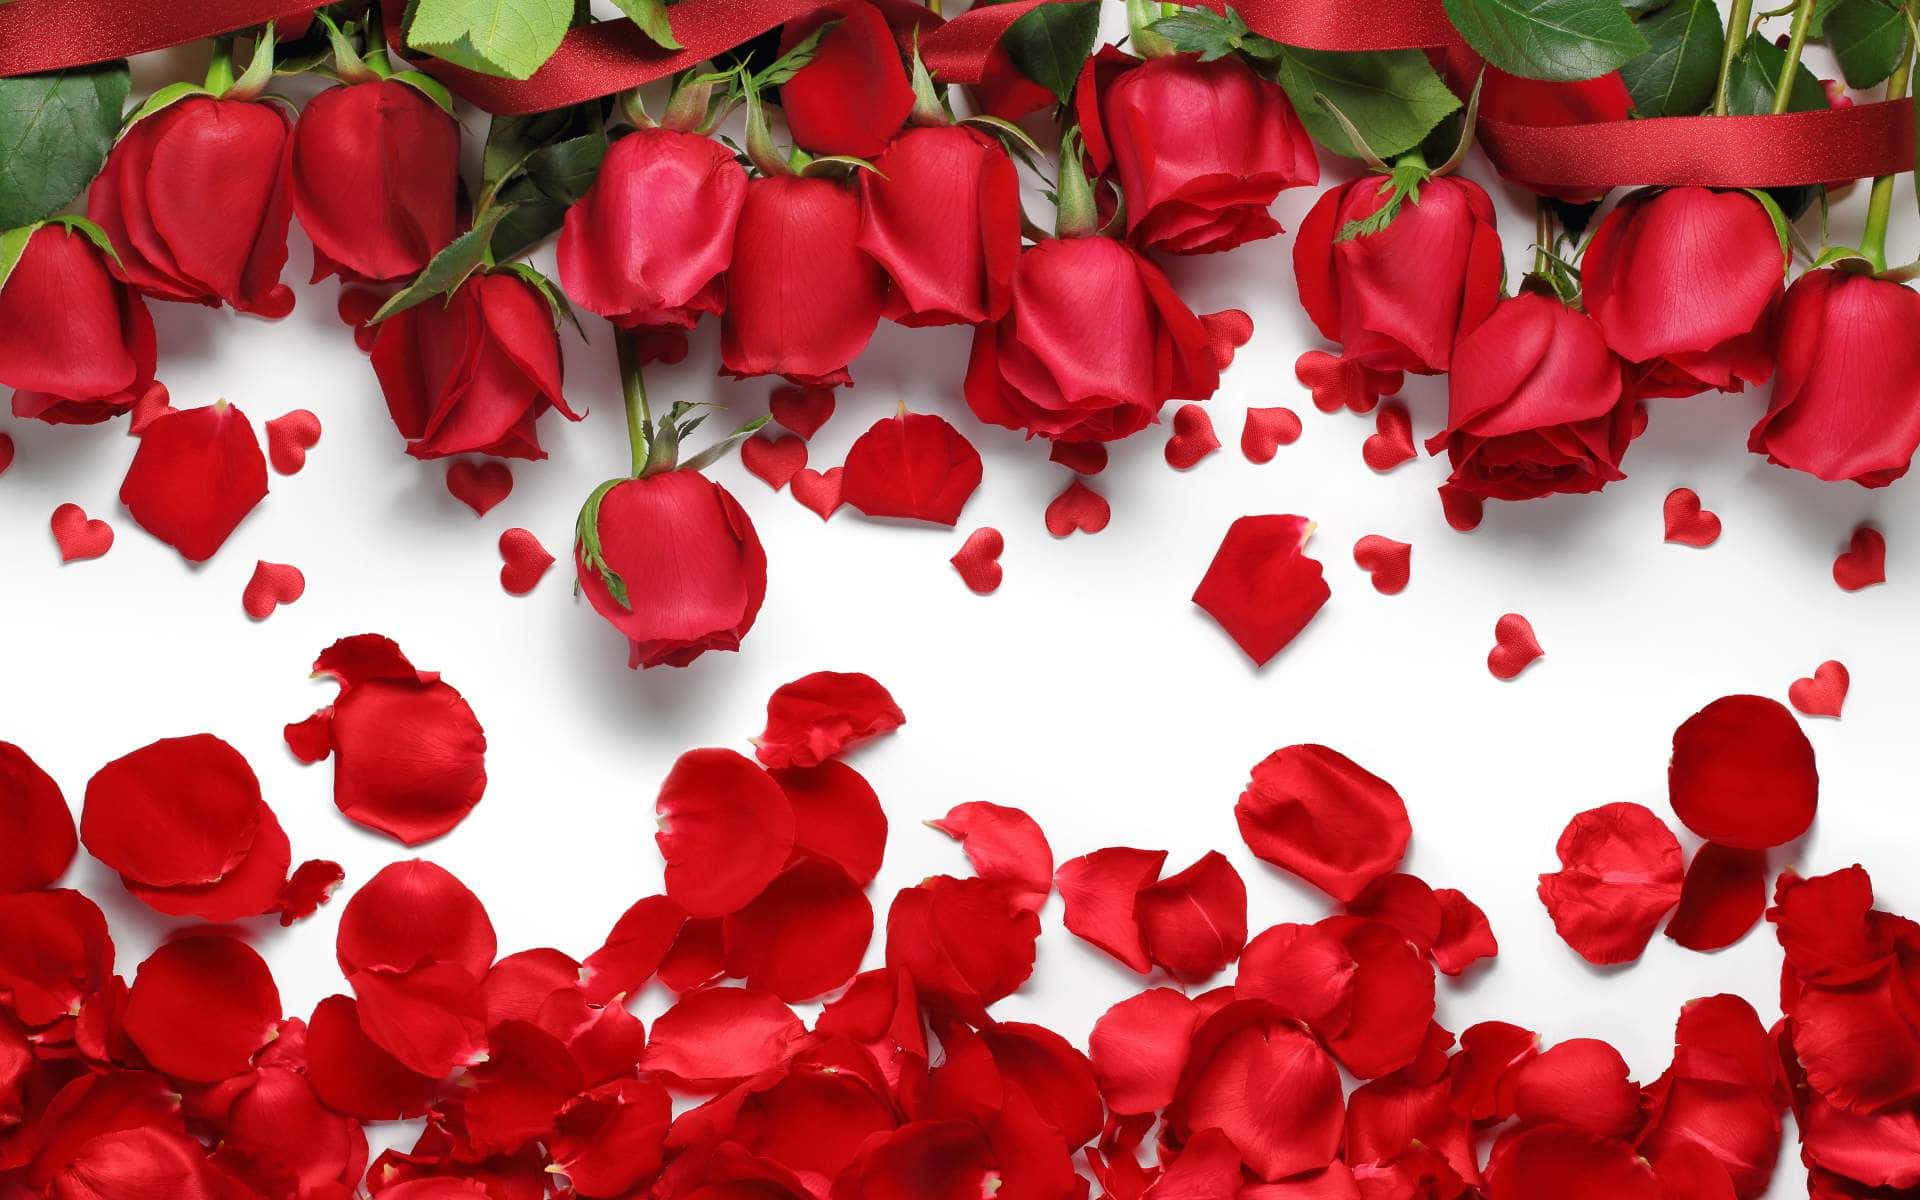 Arrayaus Invertierten Roten Rosen Laptop Wallpaper